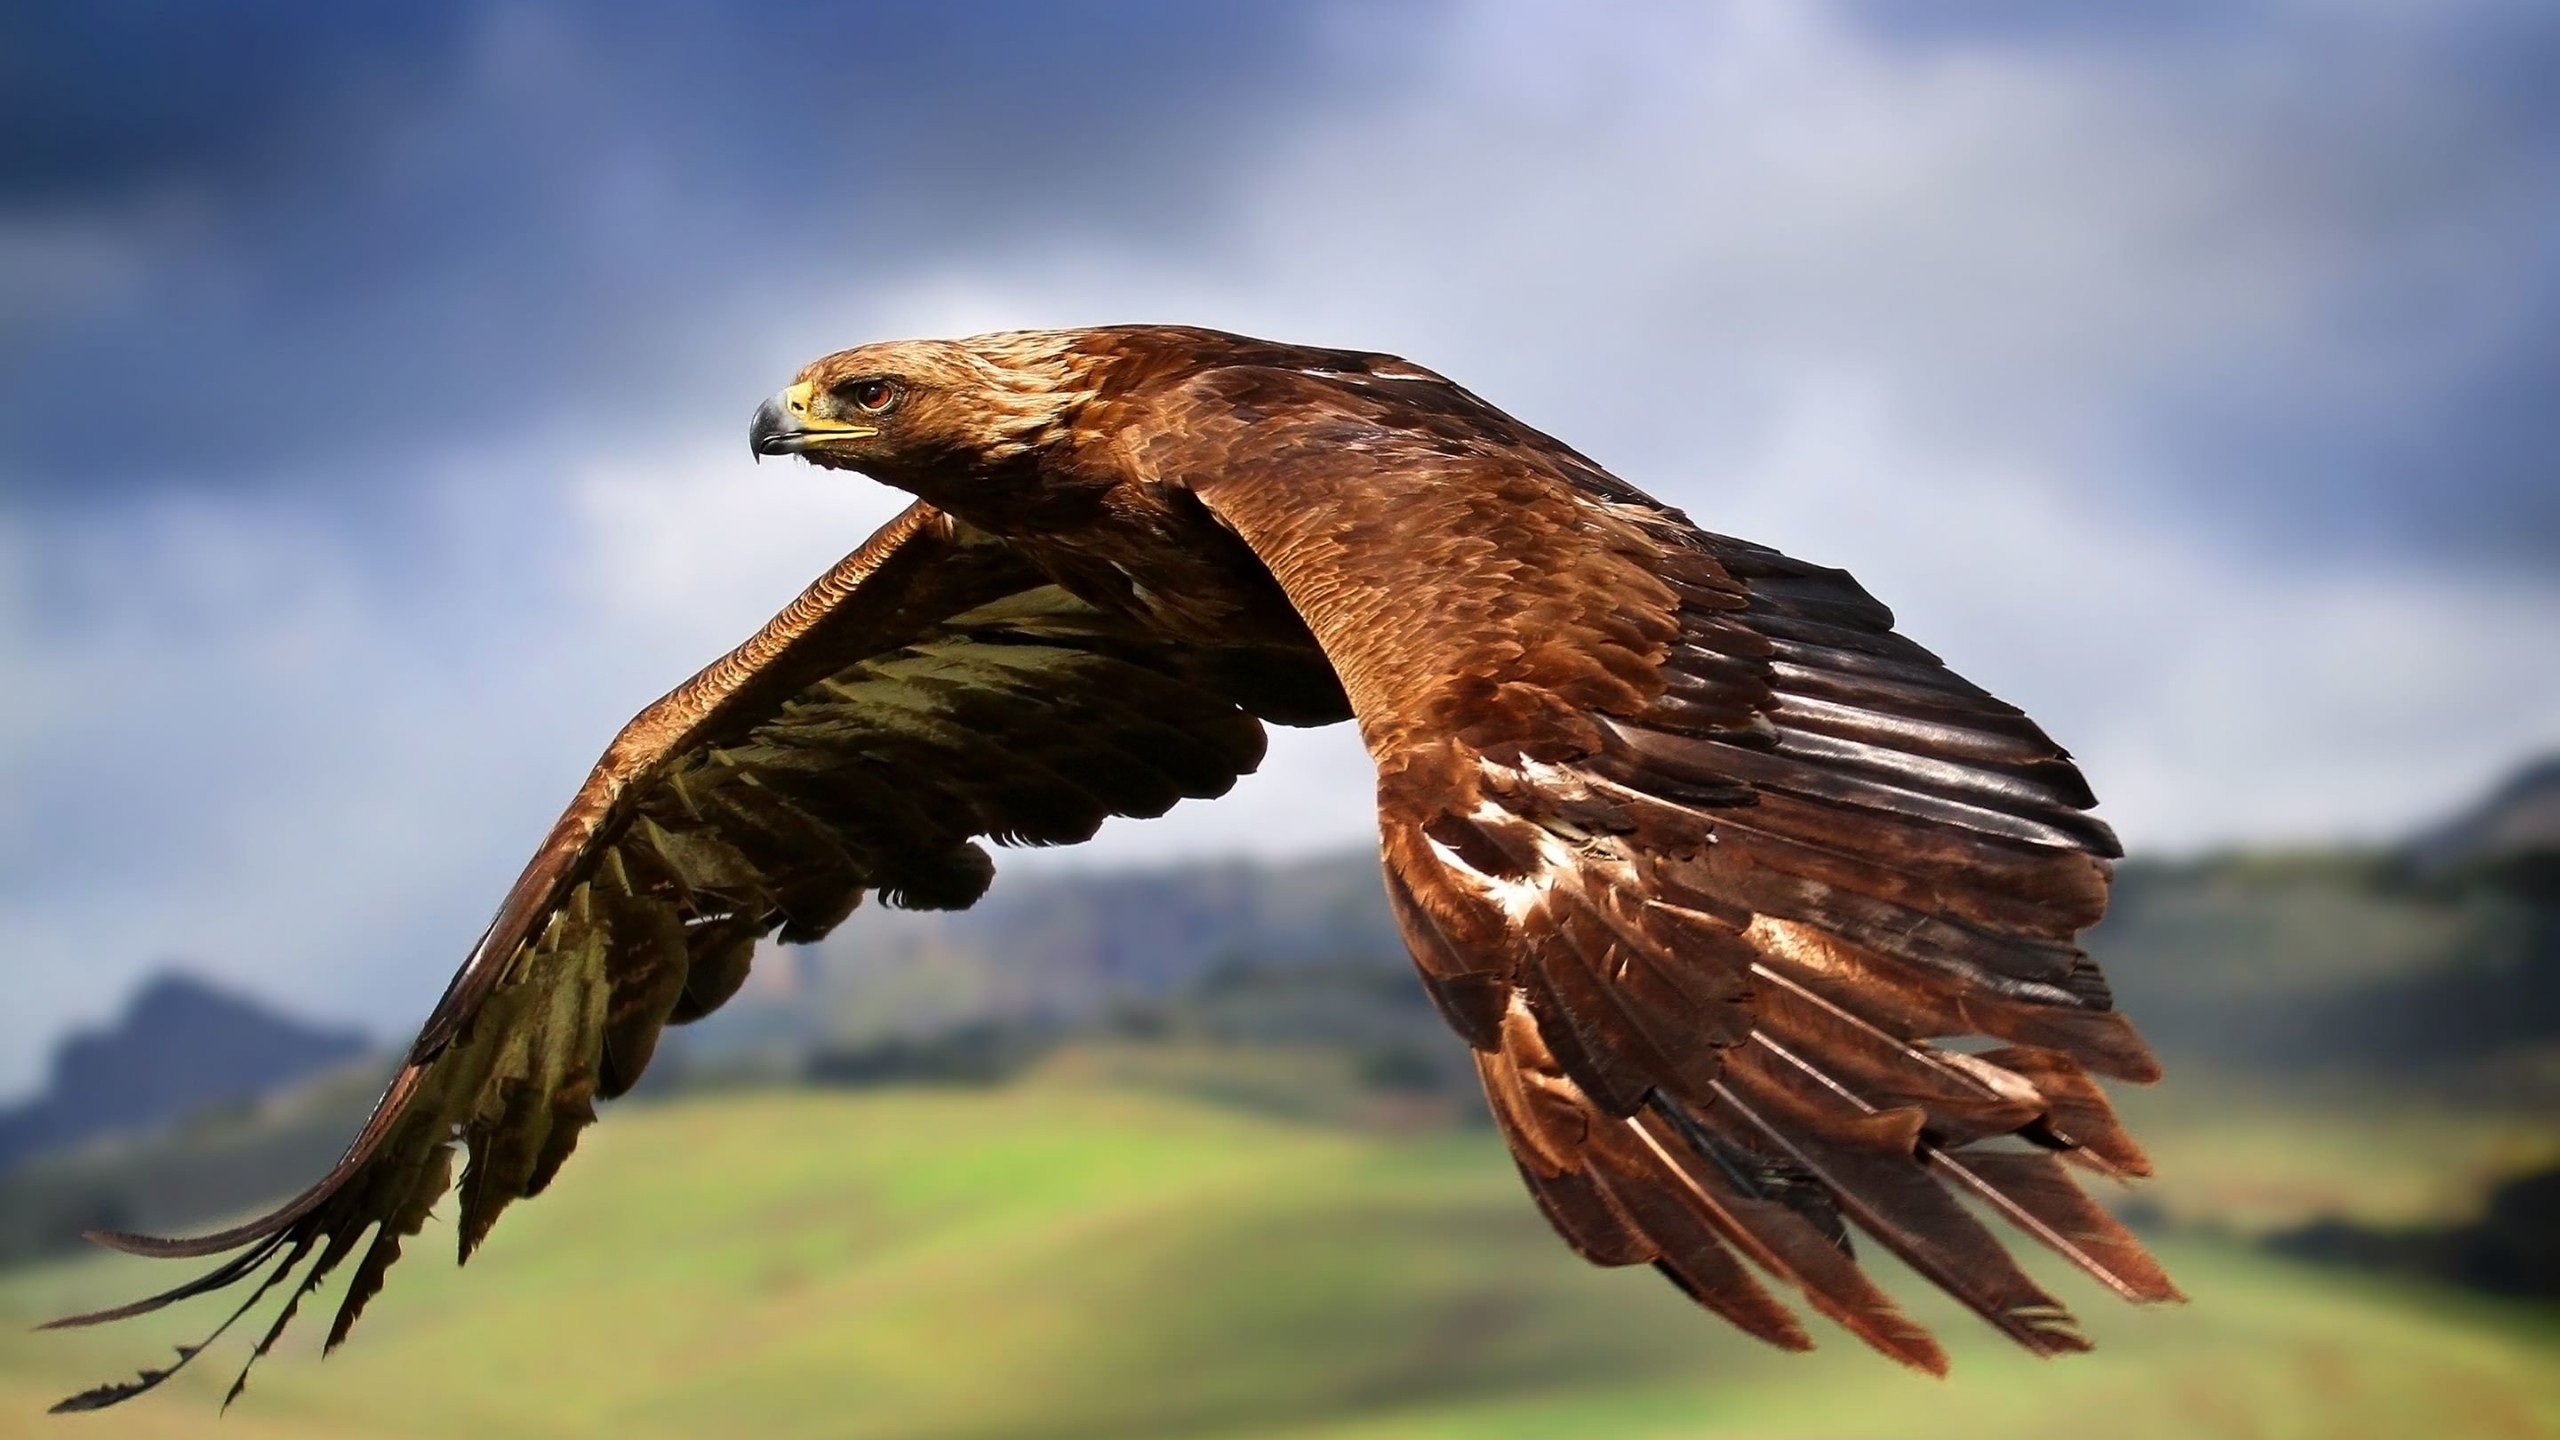 Golden Eagle Flying Wallpaper for Social Media YouTube Channel Art